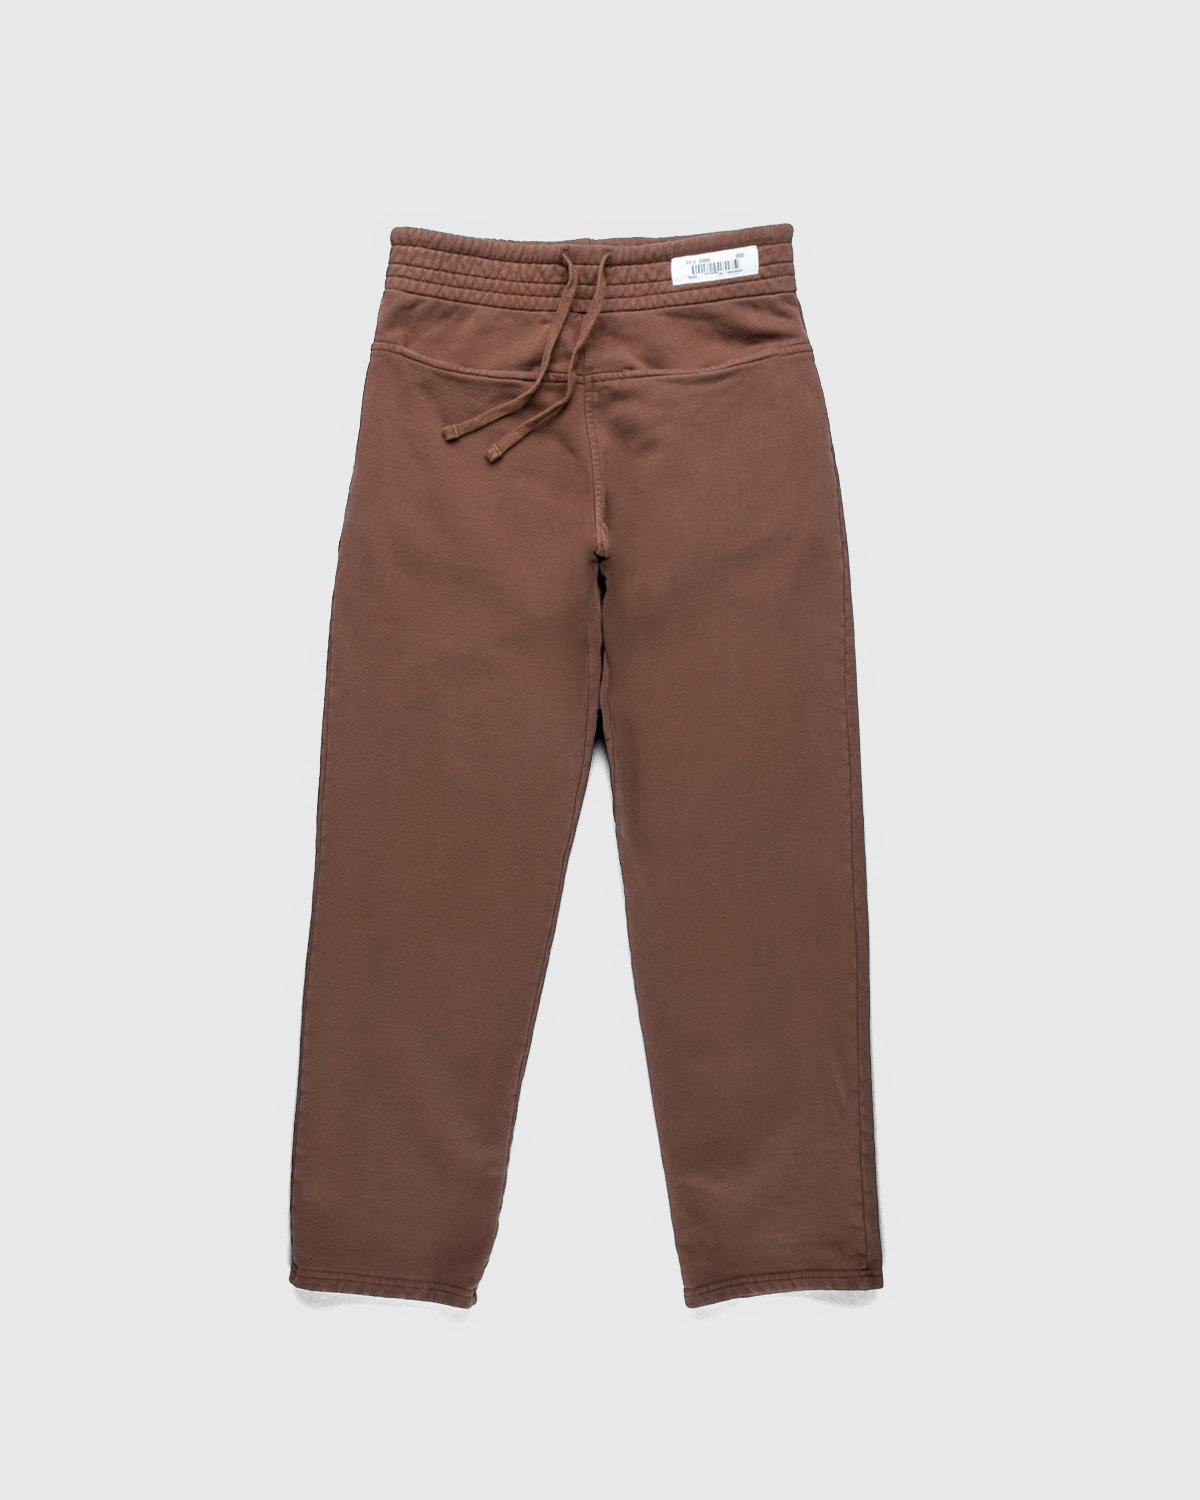 Darryl Brown - Gym Pants Coyote Brown - Clothing - Brown - Image 1